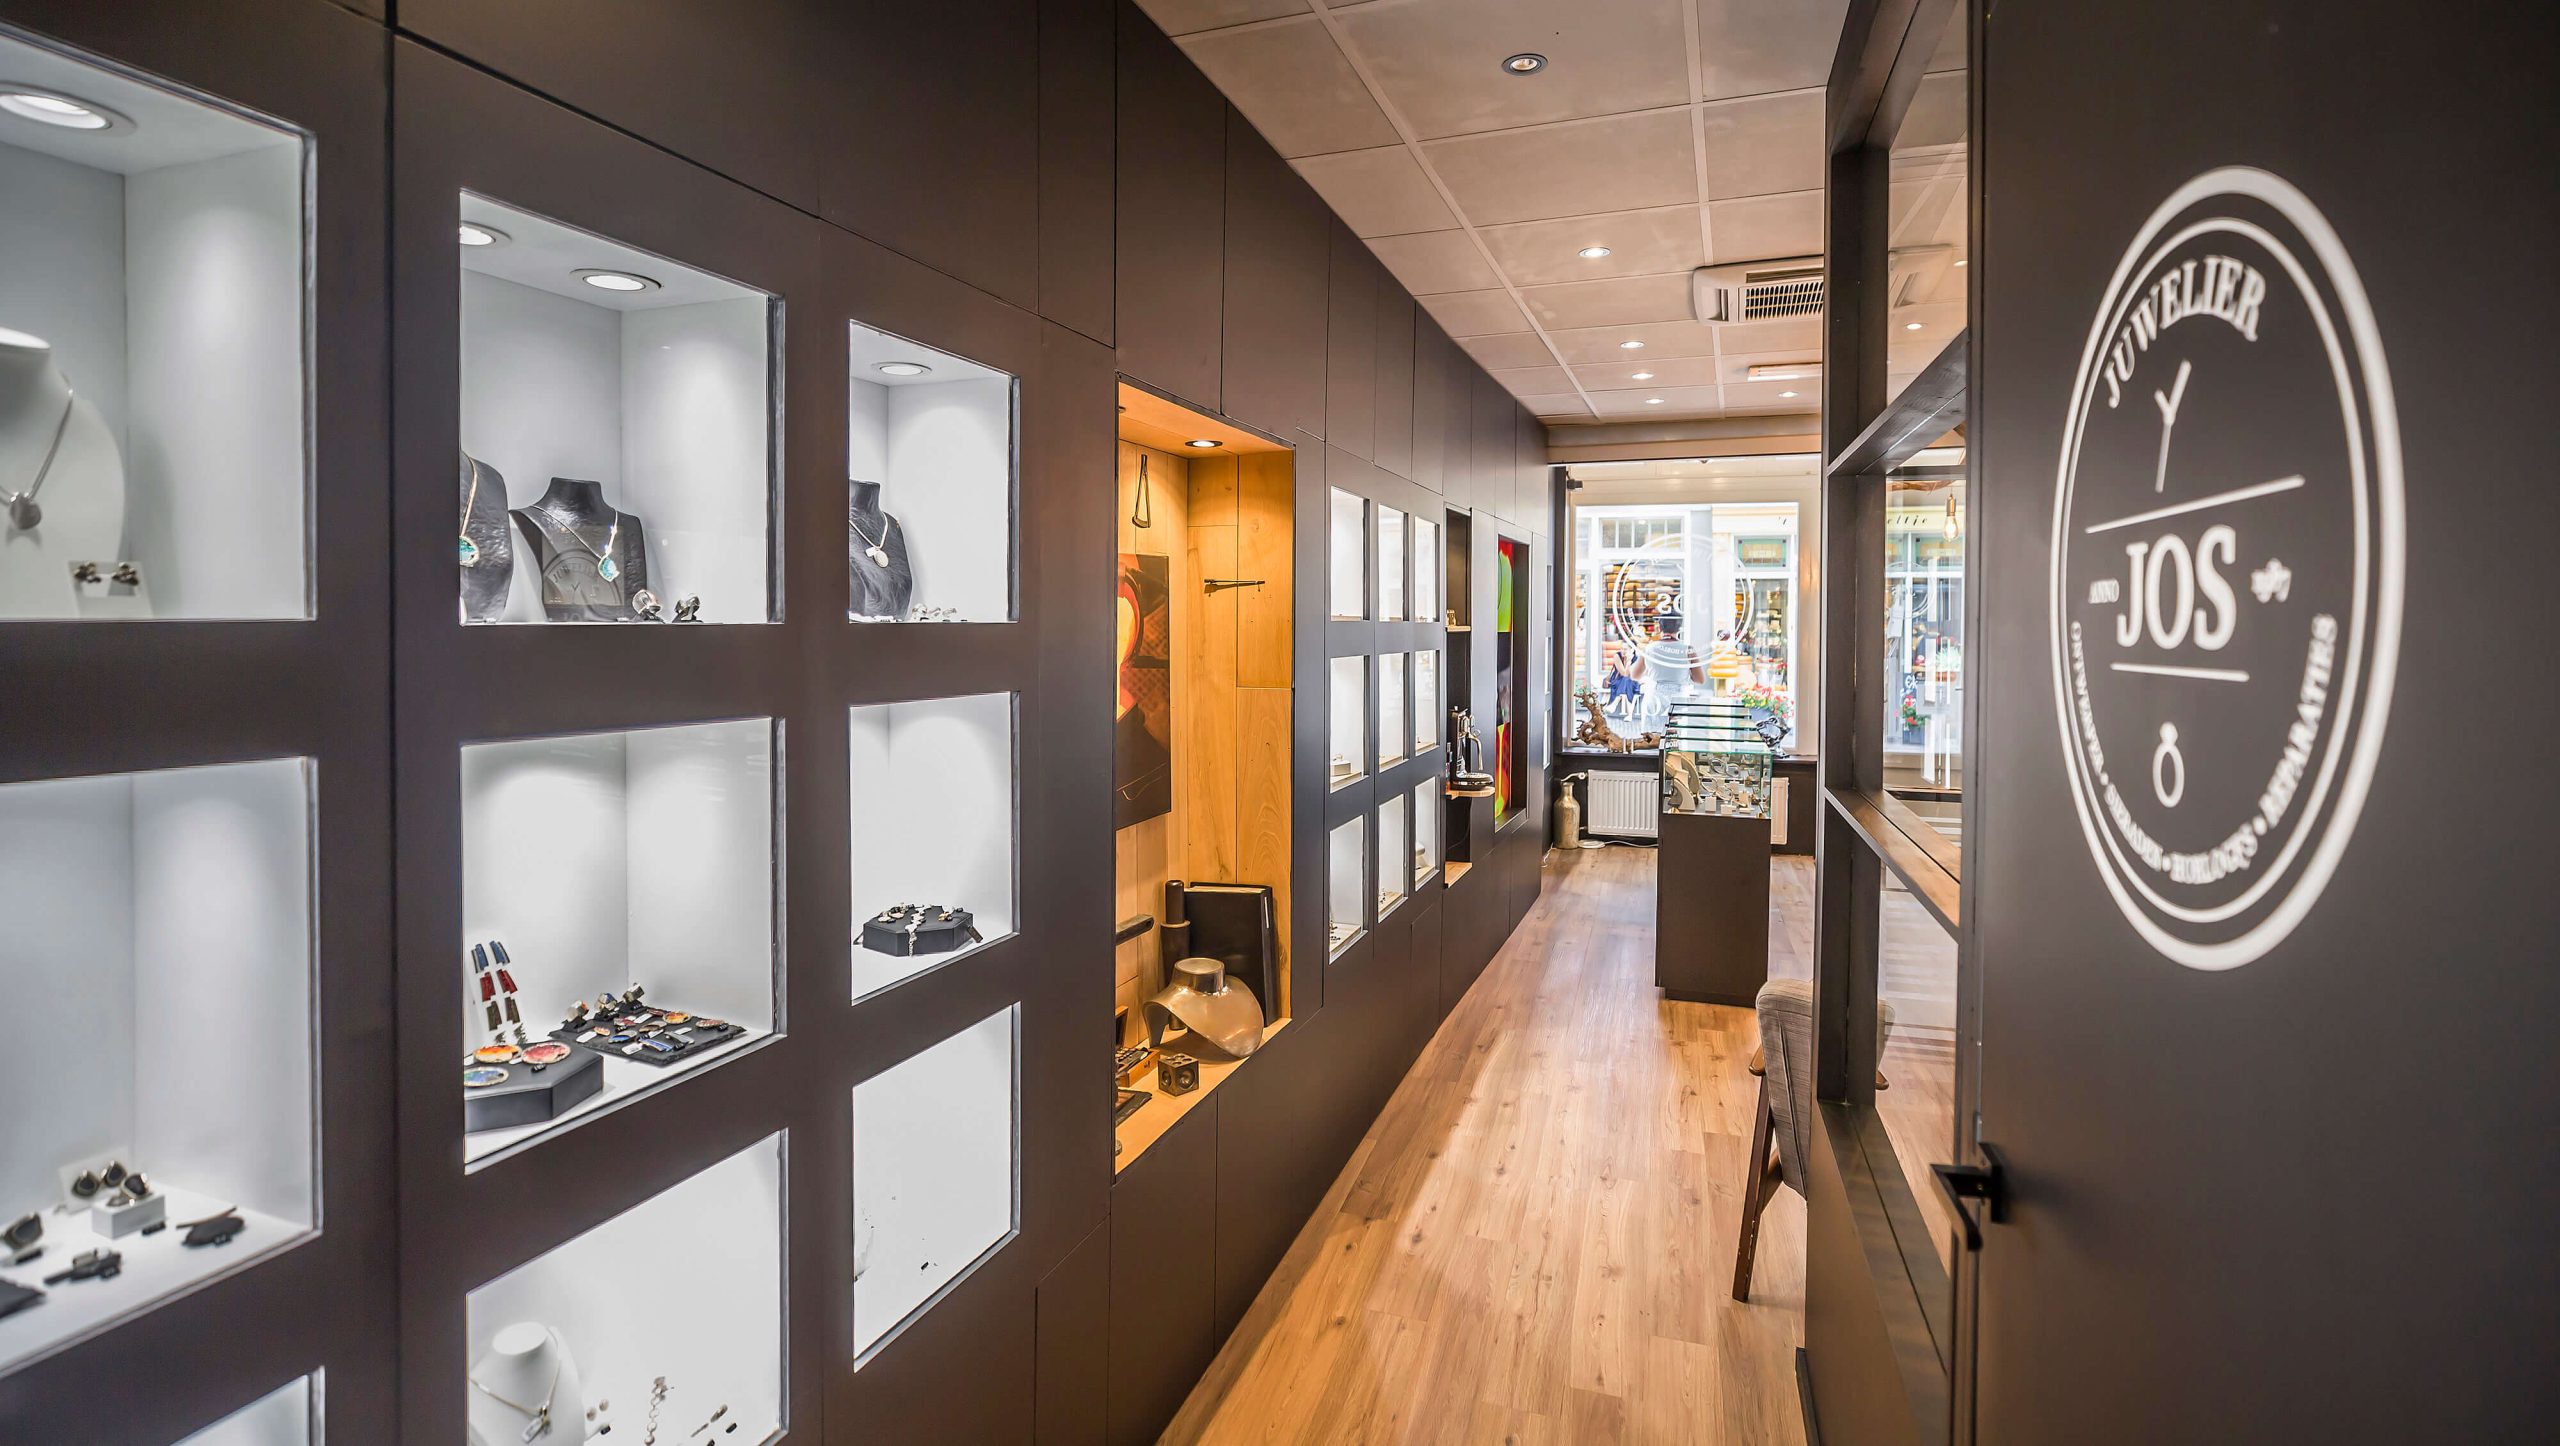 Vernieuwde winkel van Juwelier Jos met prachtig zwart met hout interieur.